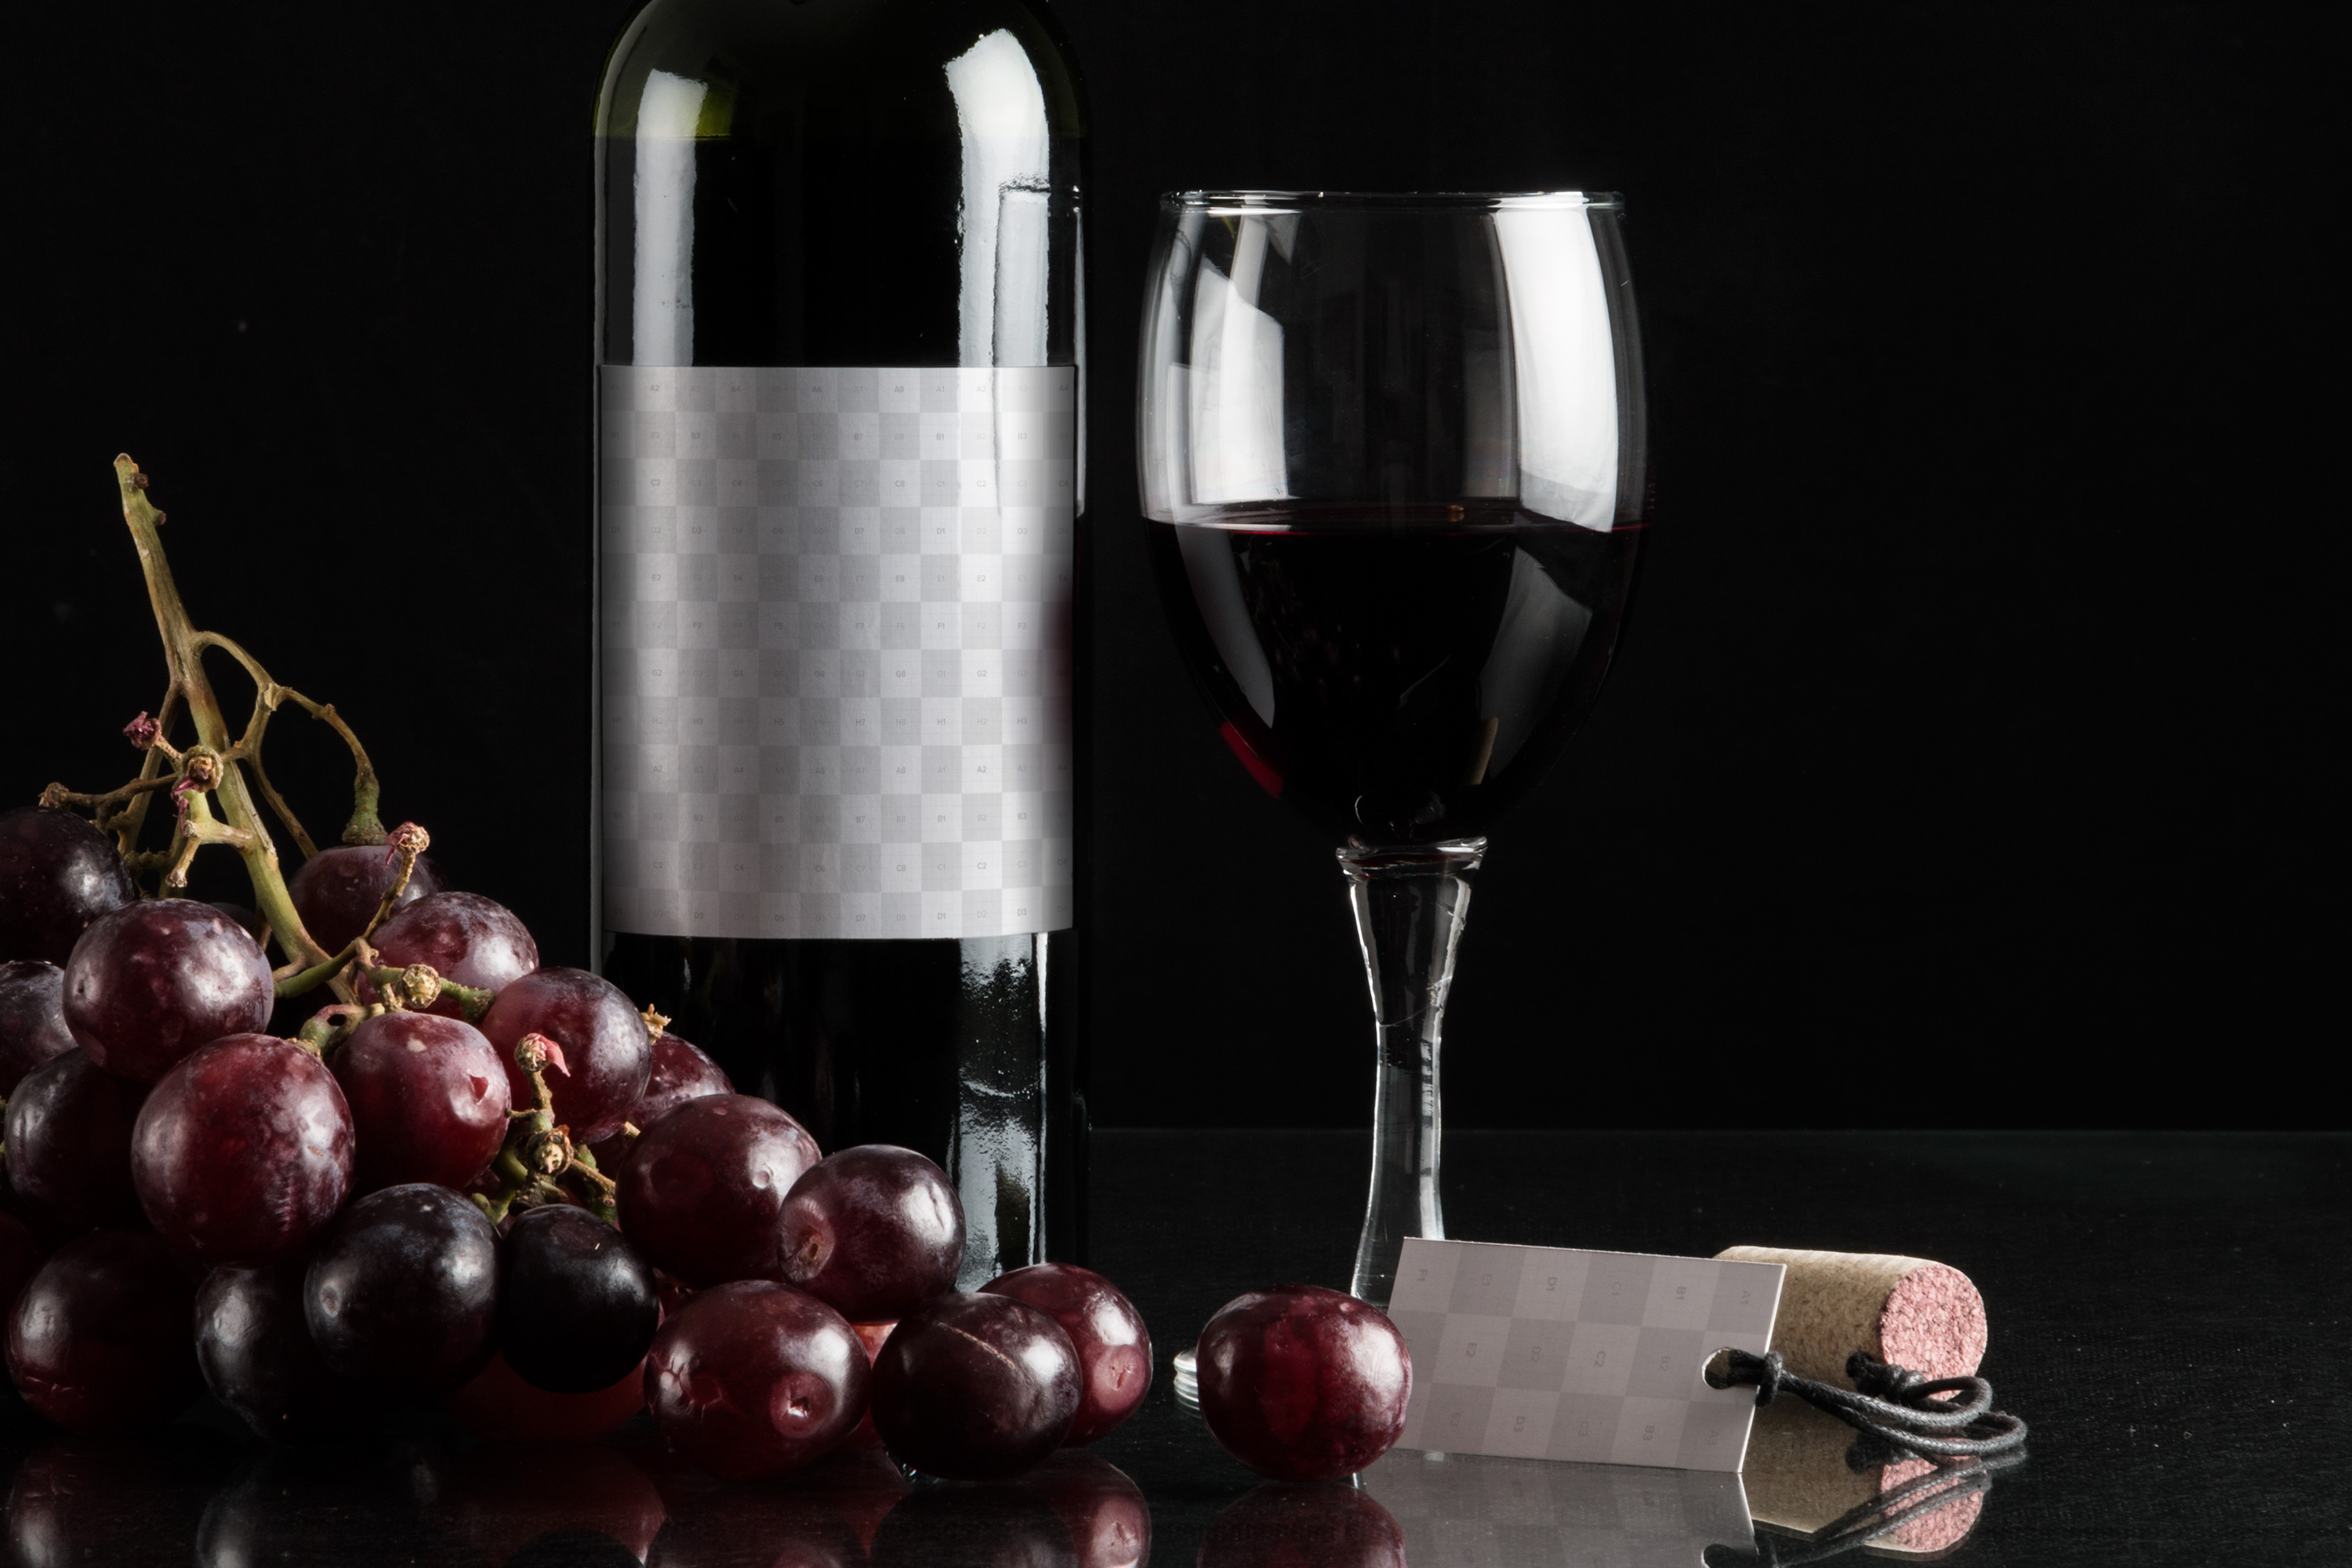 葡萄酒品牌商标设计效果预览酒瓶样机08 Wine Bottle Mockup 08插图(1)